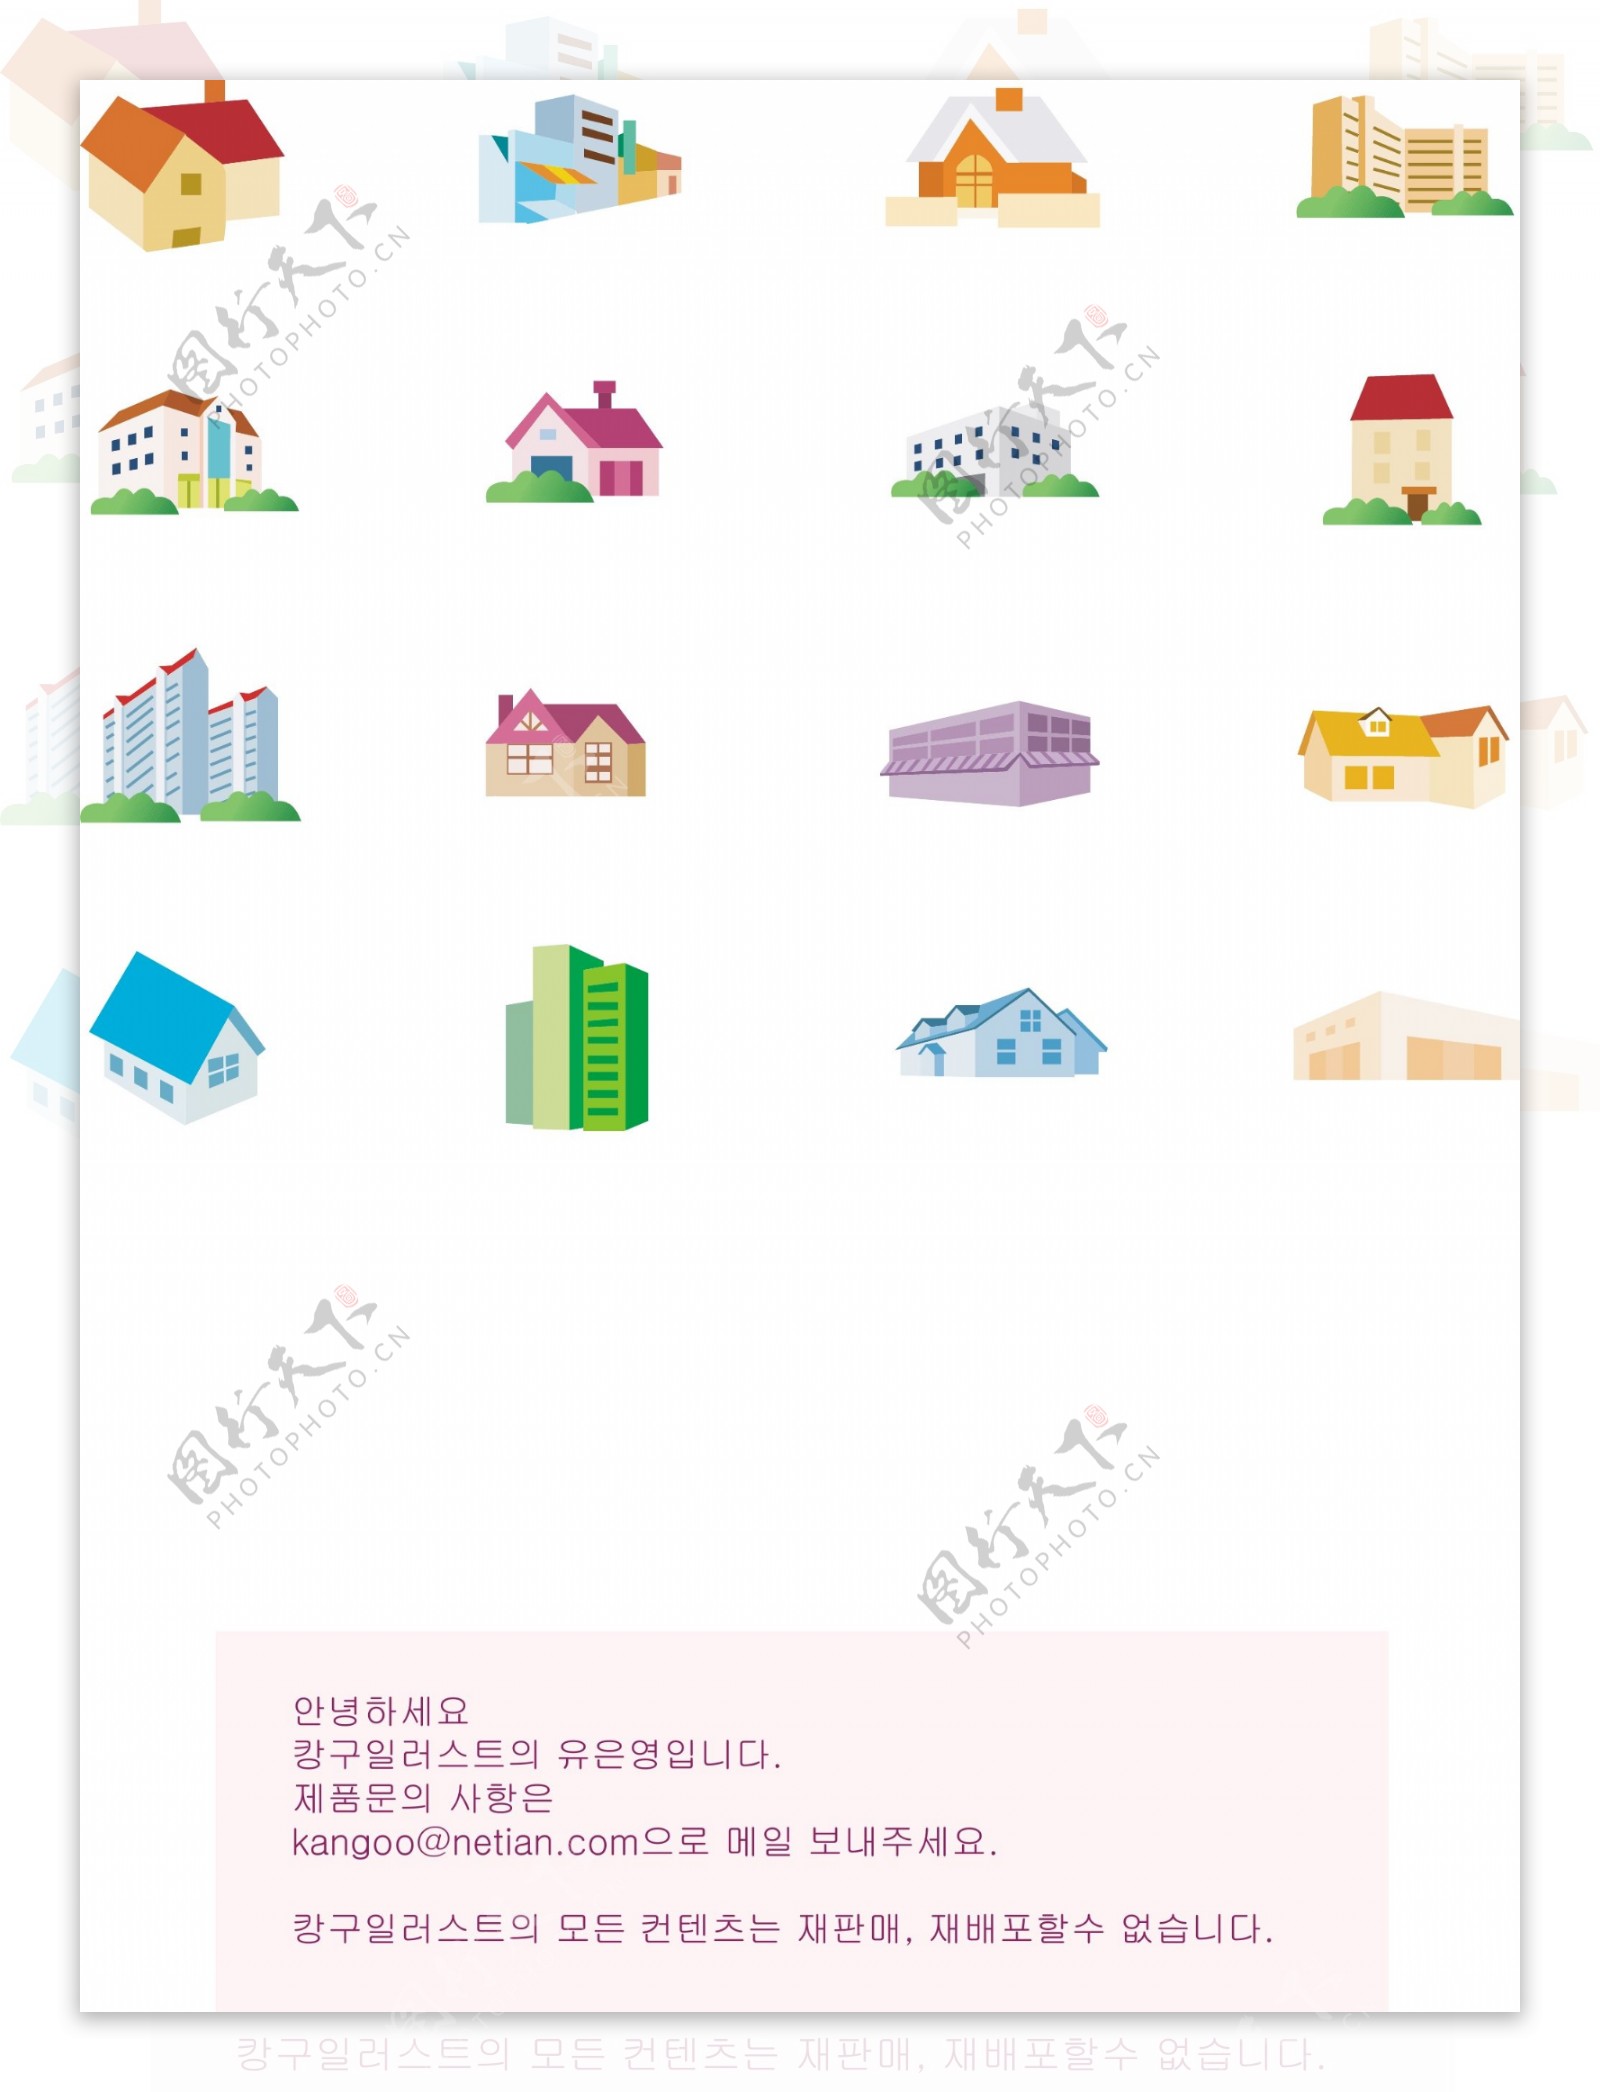 韩国房子图标